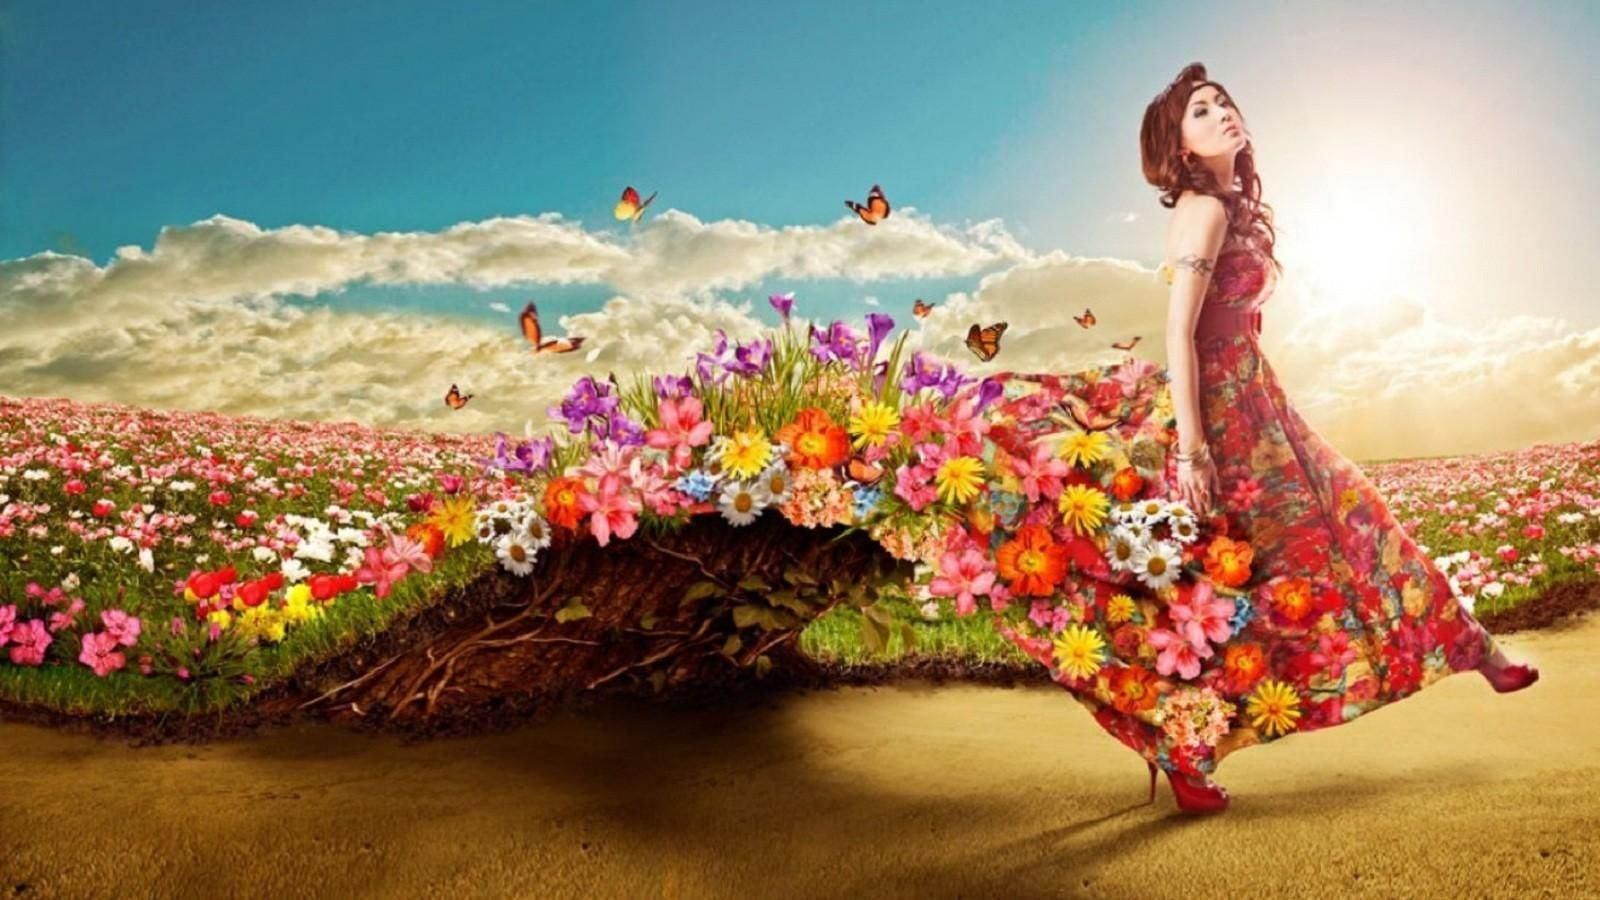 Лето в мире людей. Девушка в цветах. Женщина в море цветов.